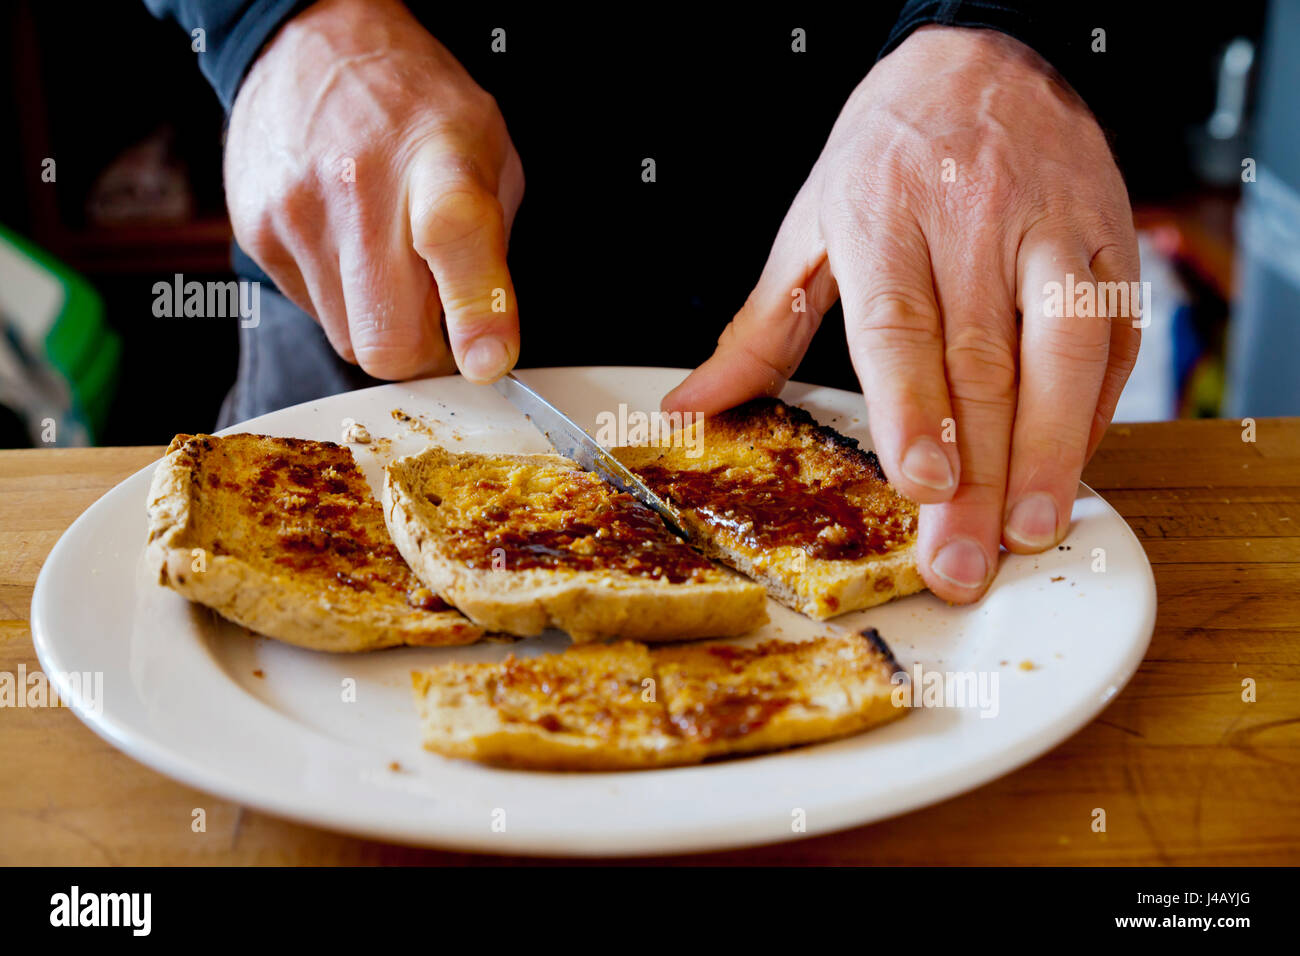 Vista cercana del hombre cortando un trozo de pan tostado en una placa blanca. Foto de stock